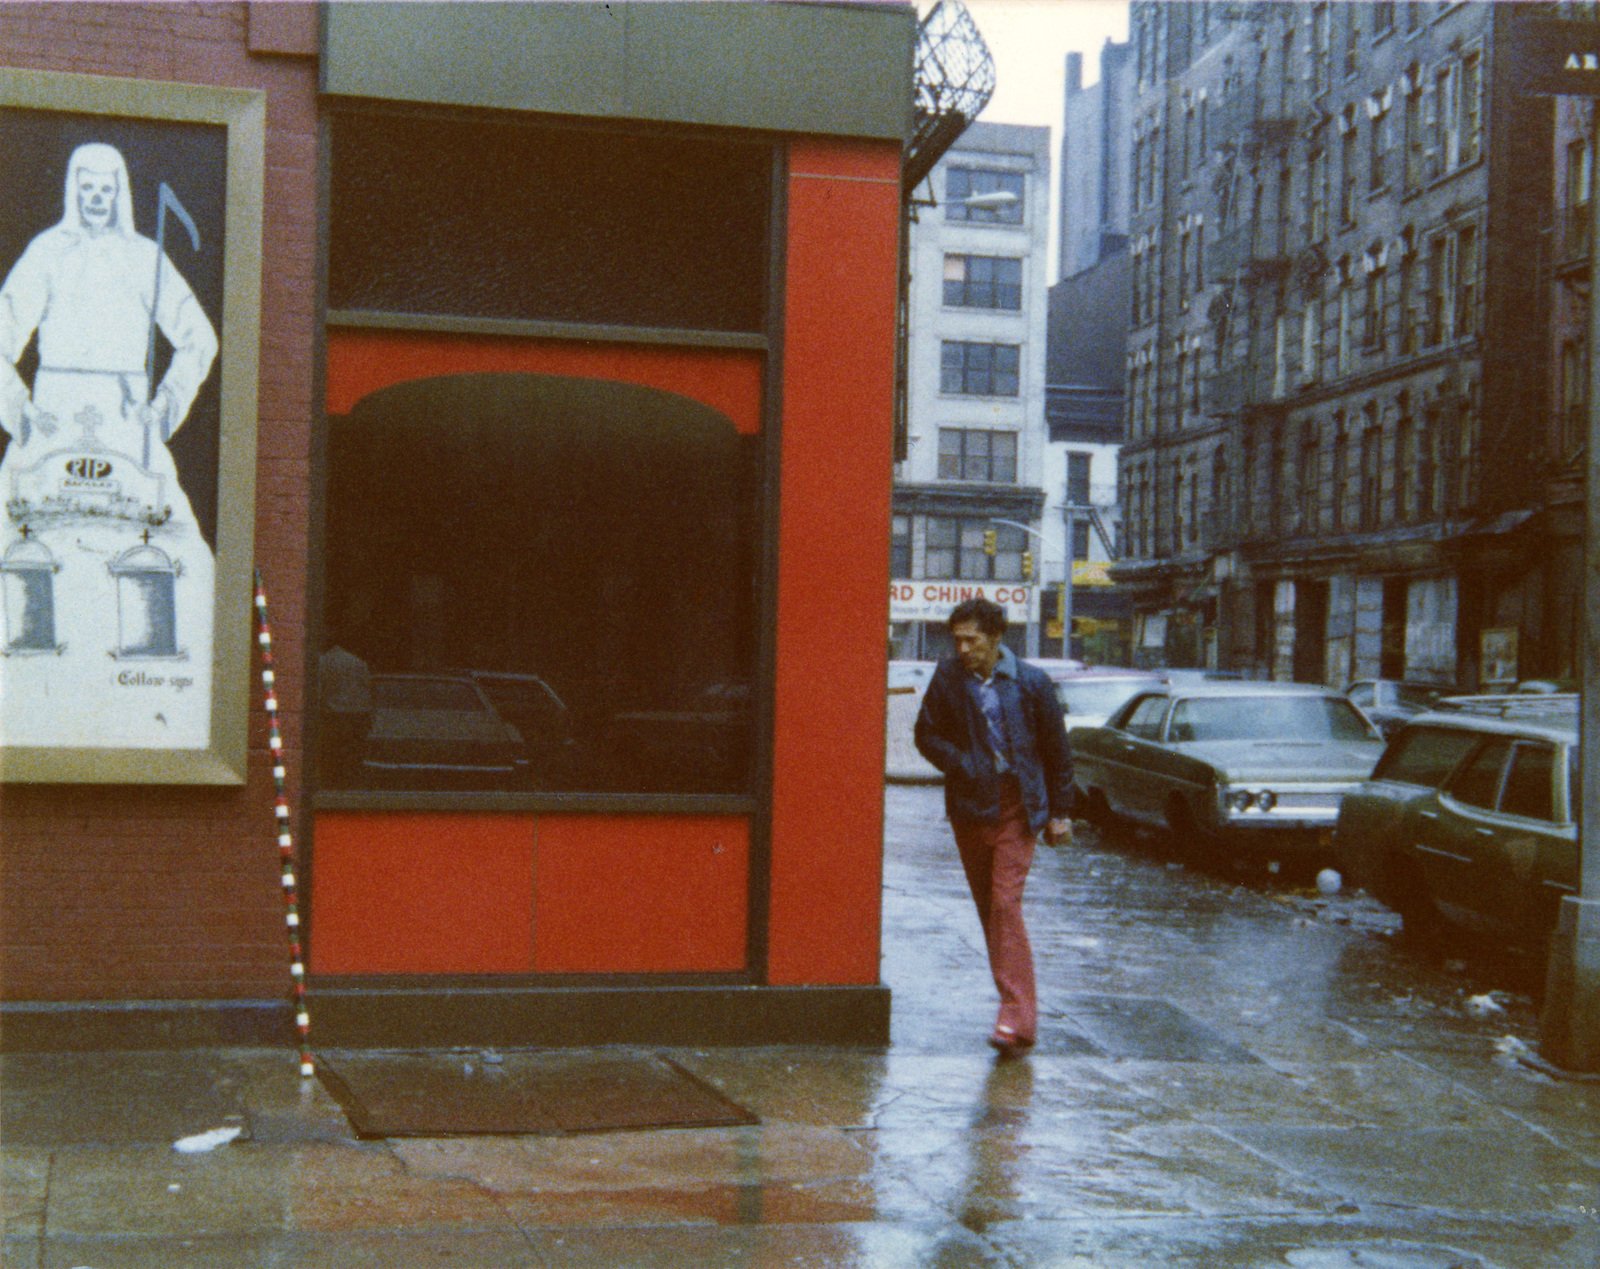 Андре Кадере в Китайском квартале, Нью-Йорк. Ноябрь 1975Предоставлено Наследием Андре Кадере и галереей Herv&eacute; Bize, Нанси